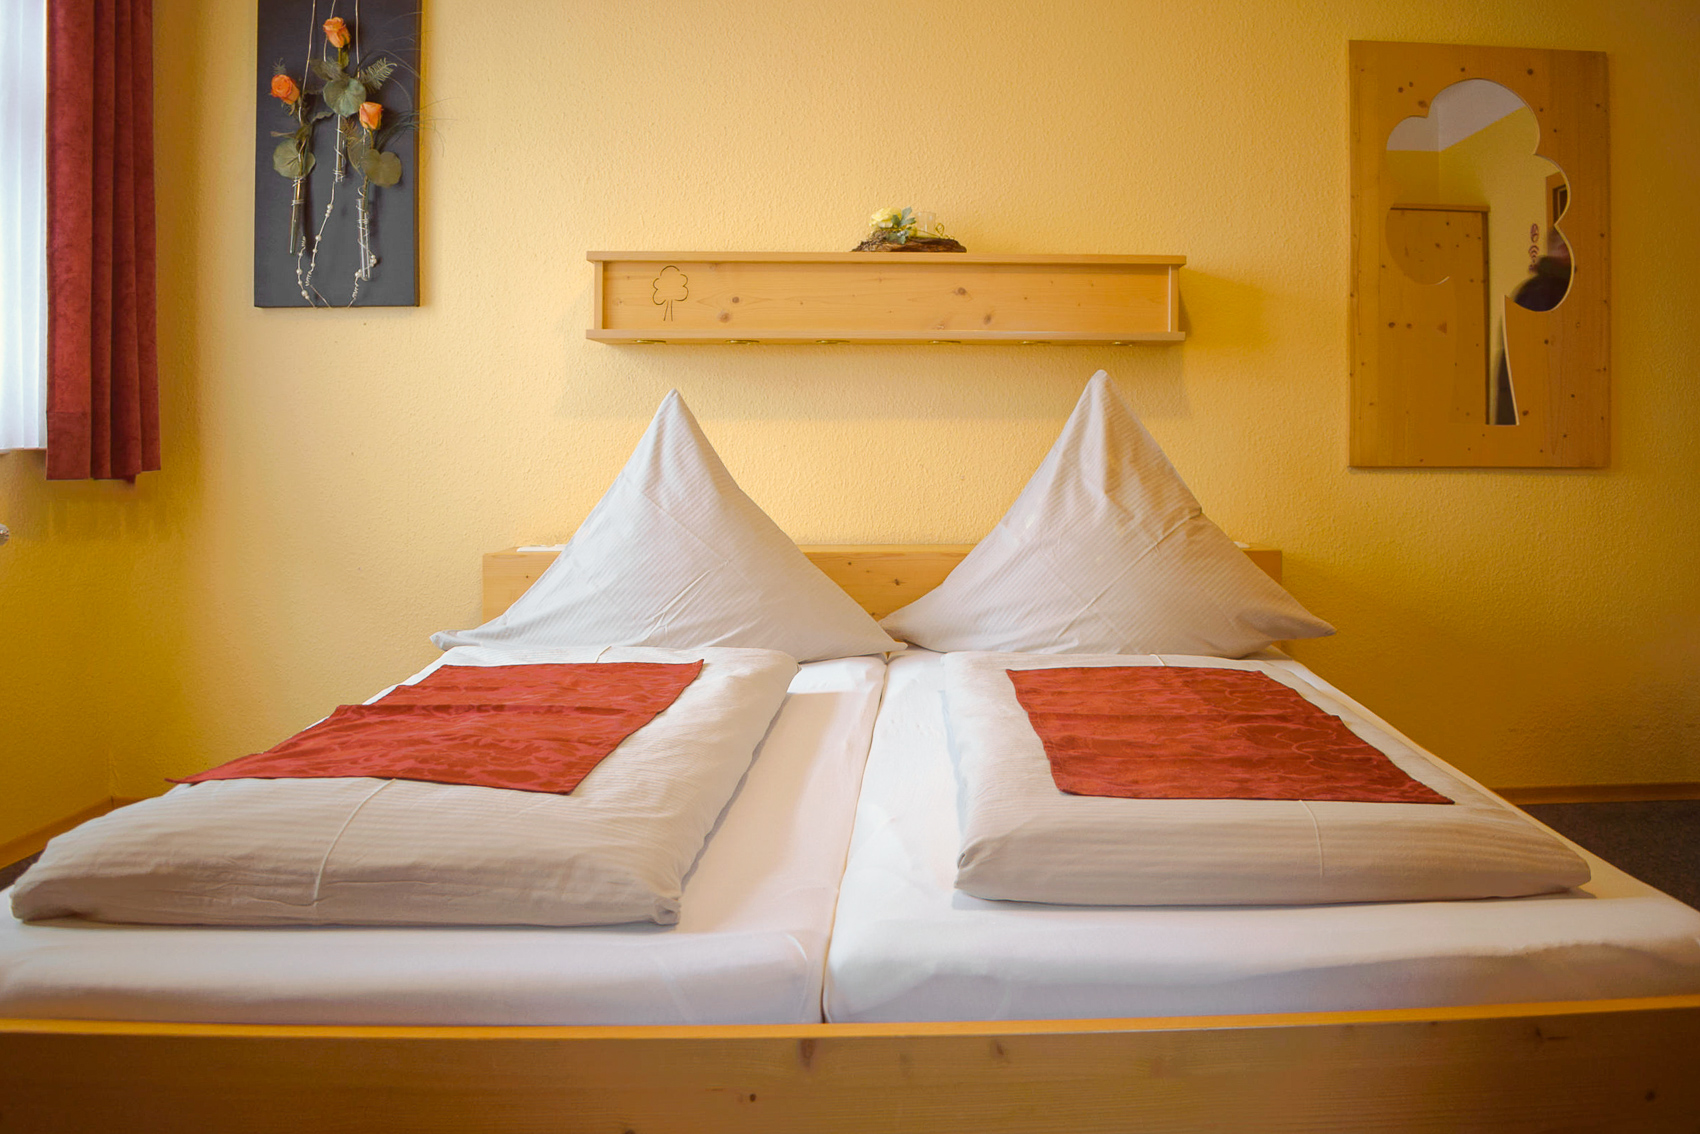 Gästezimmer in Stetten am kalten Markt buchen. Doppelbett.